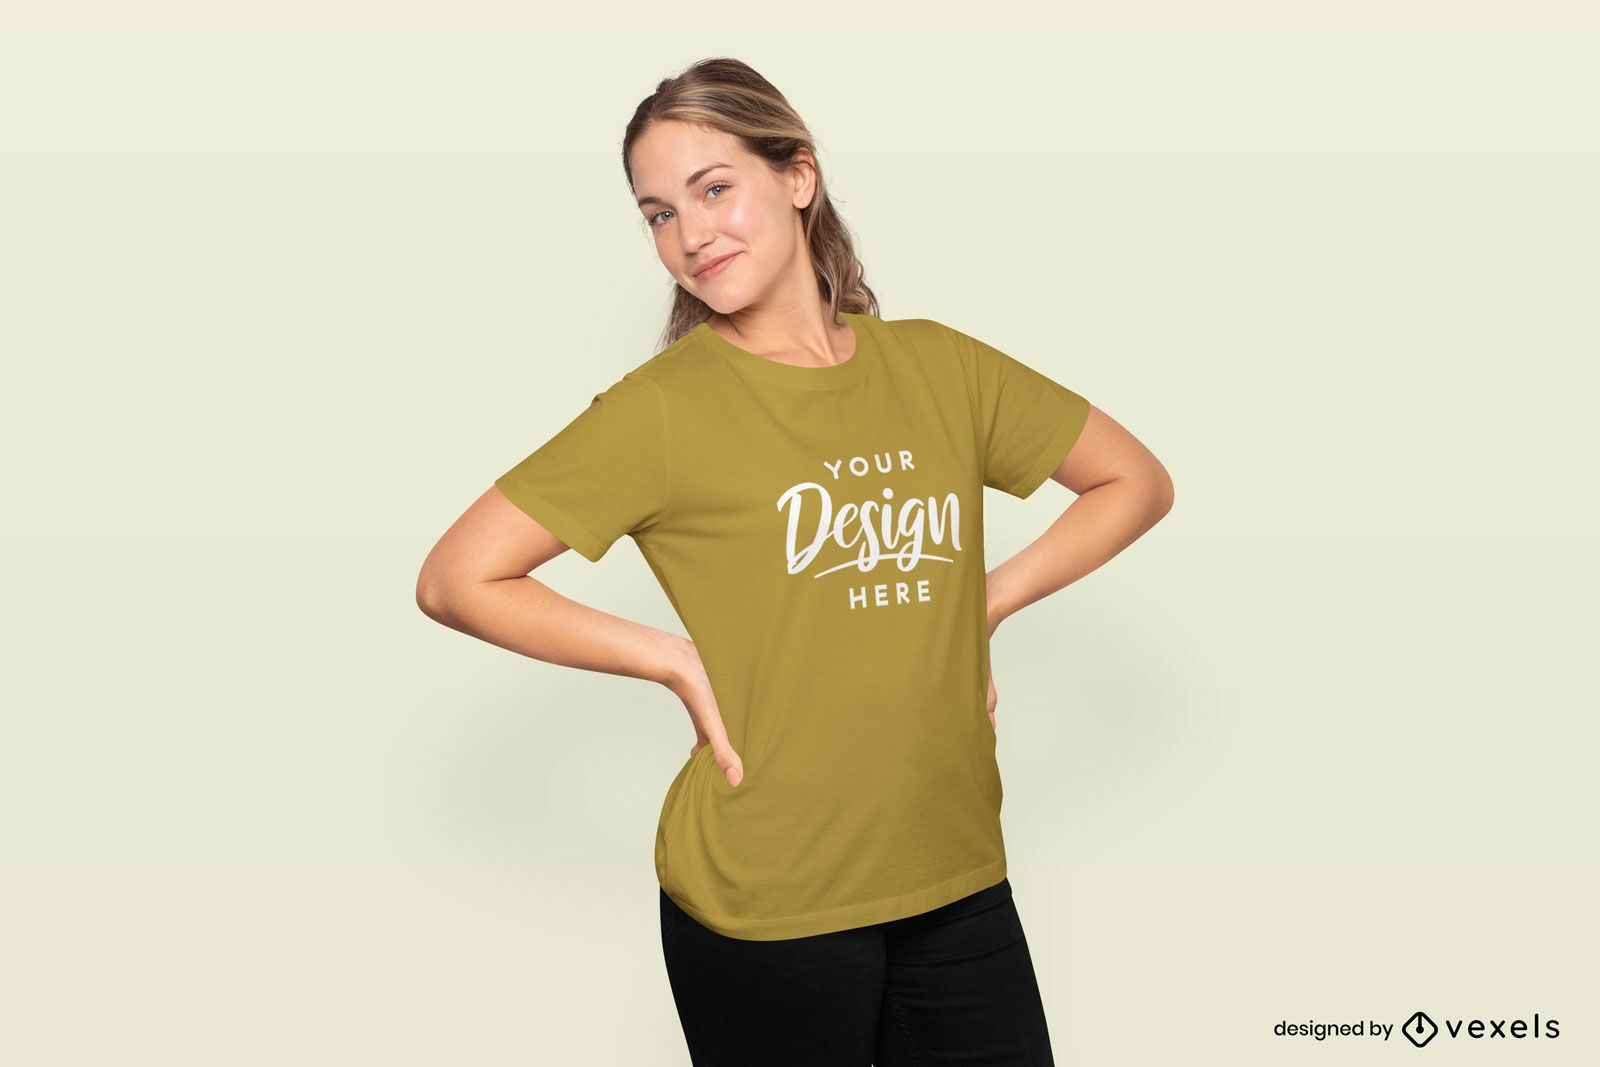 Modelo Editável PSD De Mulher Com As Mãos Na Maquete De Camiseta